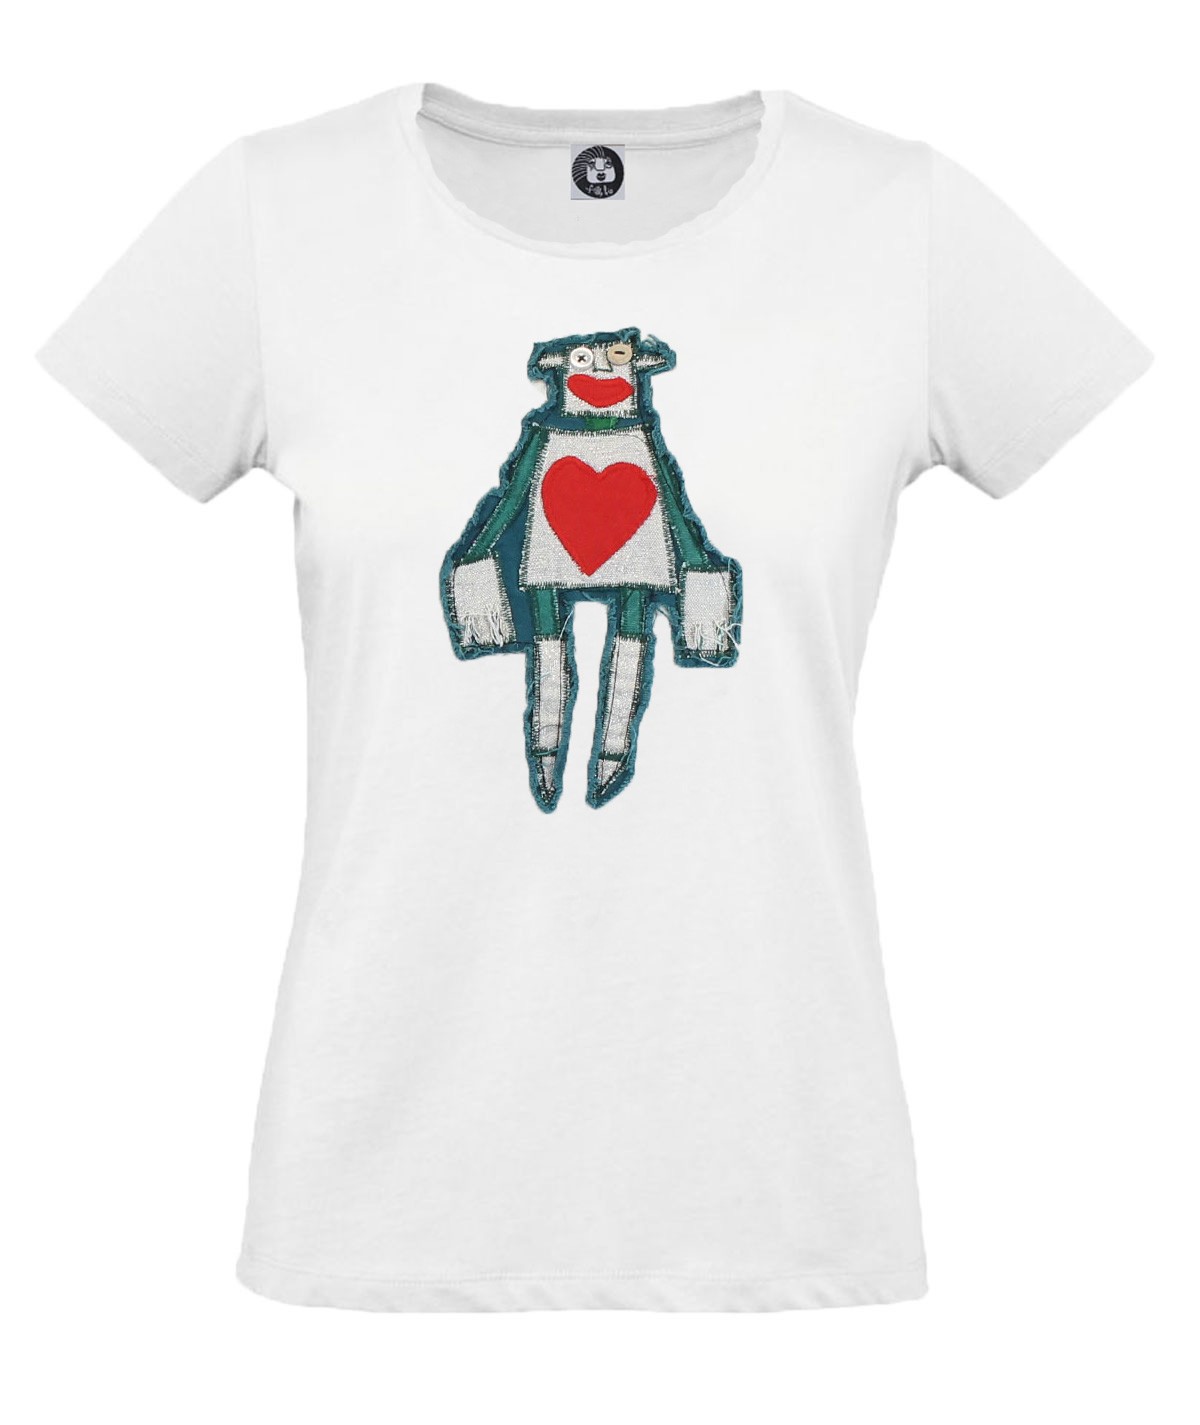 In love robot T-shirt